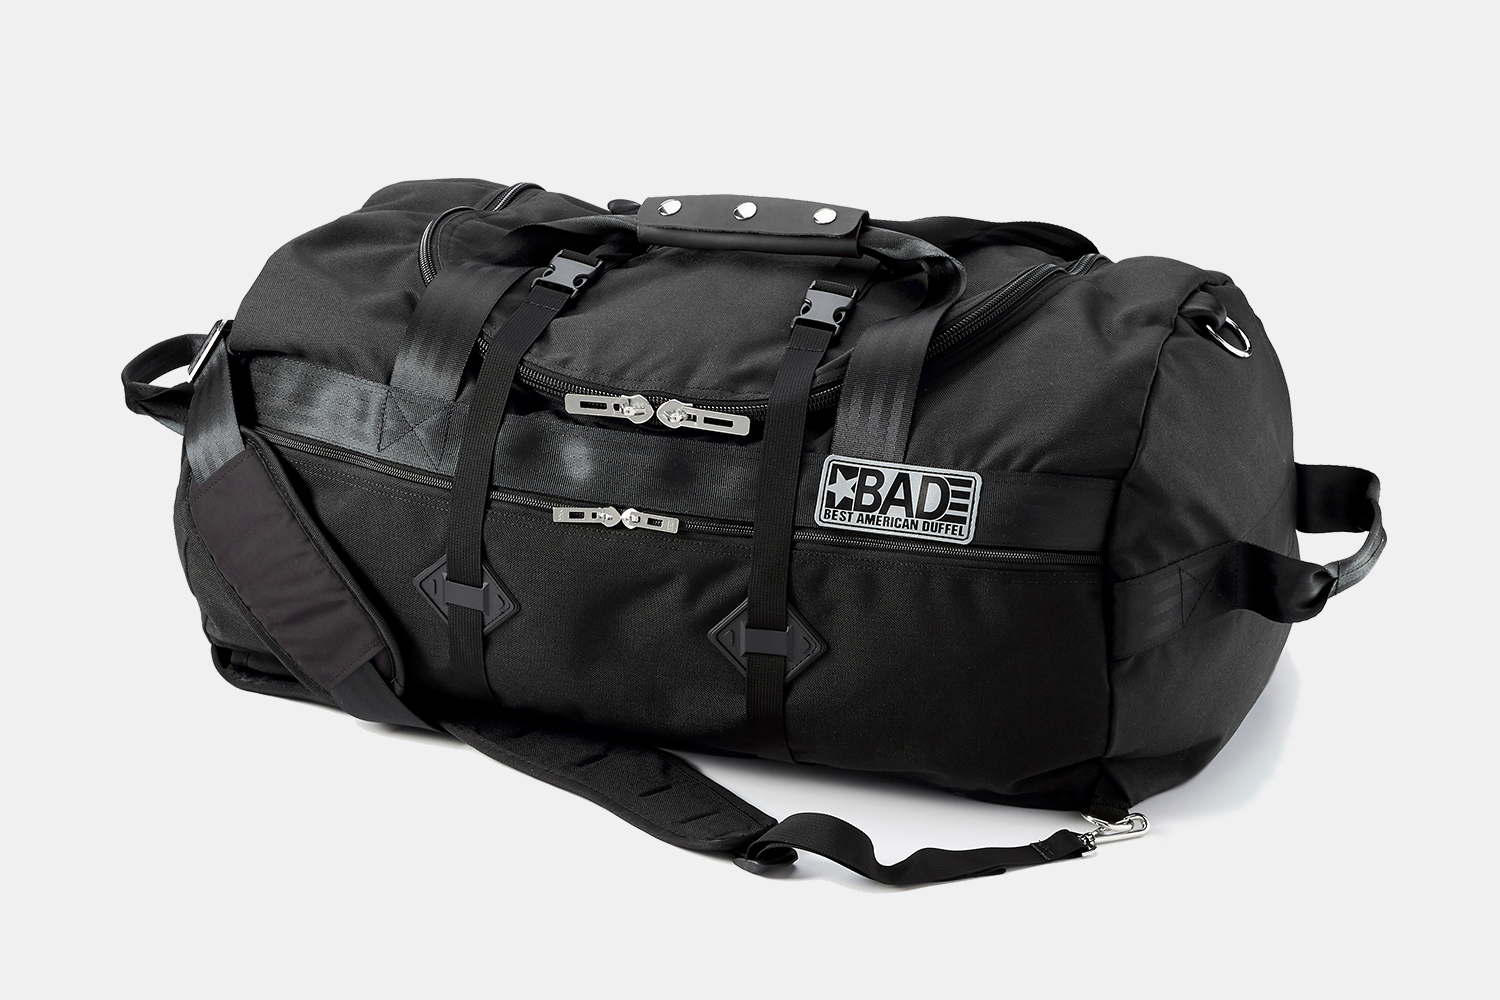 Hybrid backpack and duffel bag made in America